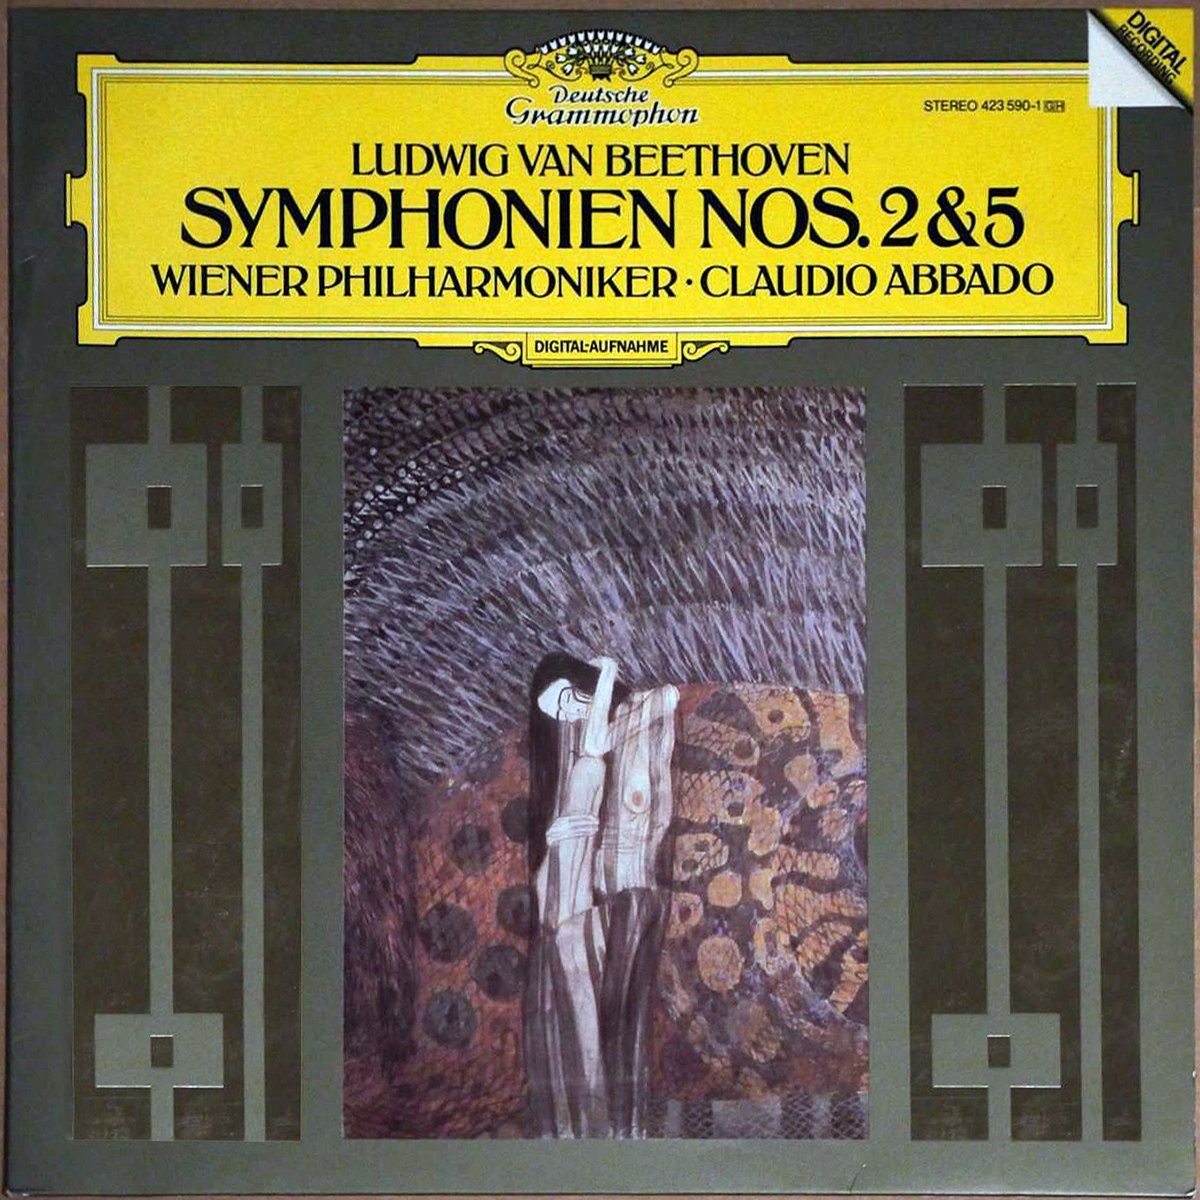 DGG 423 590 Beethoven Symphonie 2 & 5 Abbado DGG Digital Aufnahme